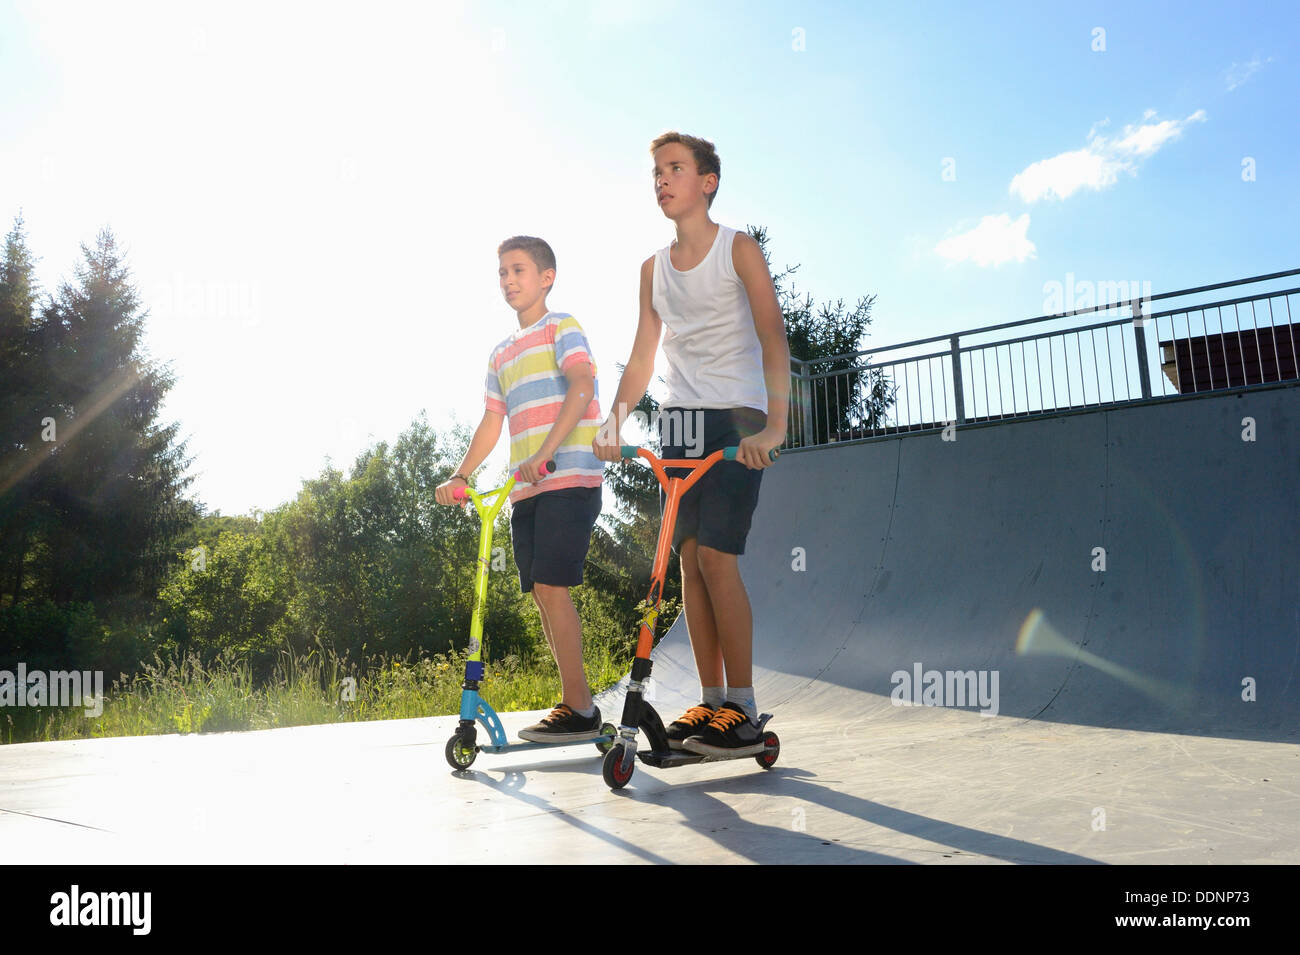 Deux garçons avec des scooters sur une place de sport Banque D'Images